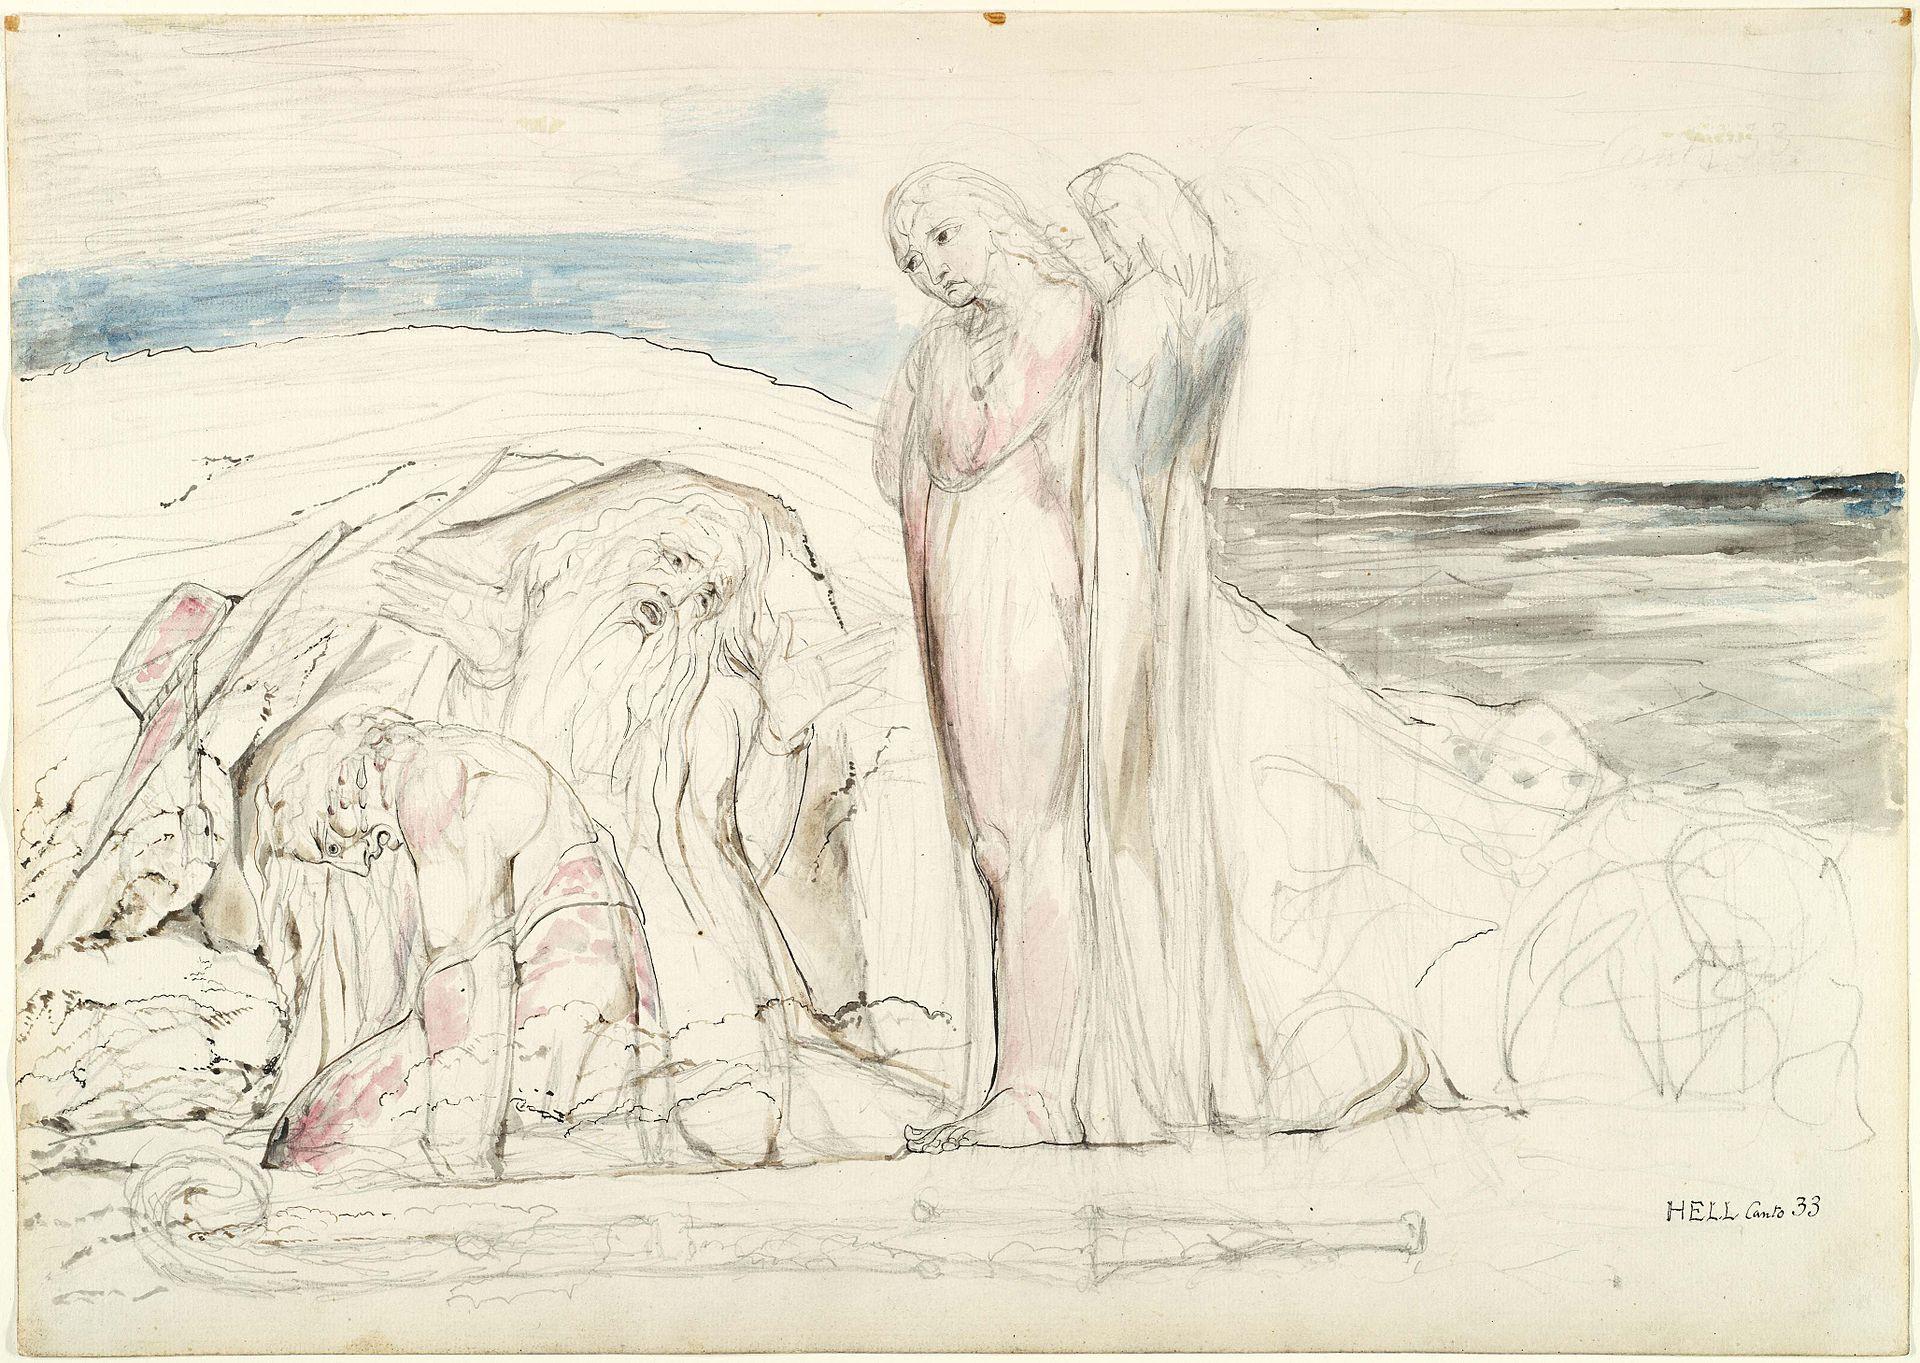 Inferno  Dante Alighieri, William Blake, Author